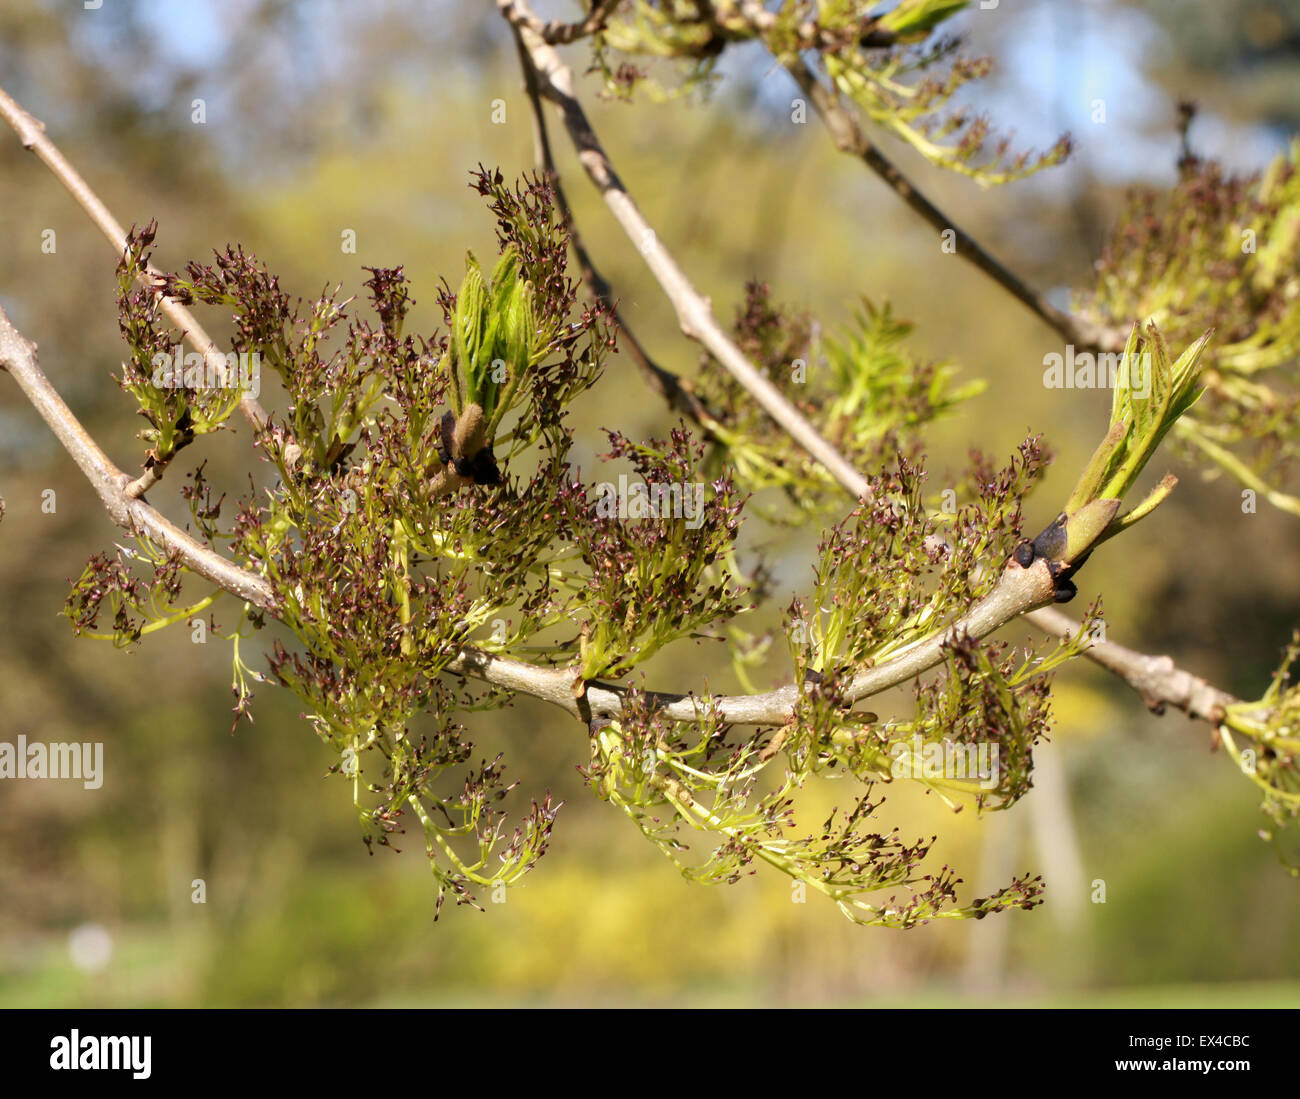 Los brotes y las flores del Wentworth llorando fresnos, Fraxinus exelsior Wentworthii 'Pendula', Oleaceae. Foto de stock